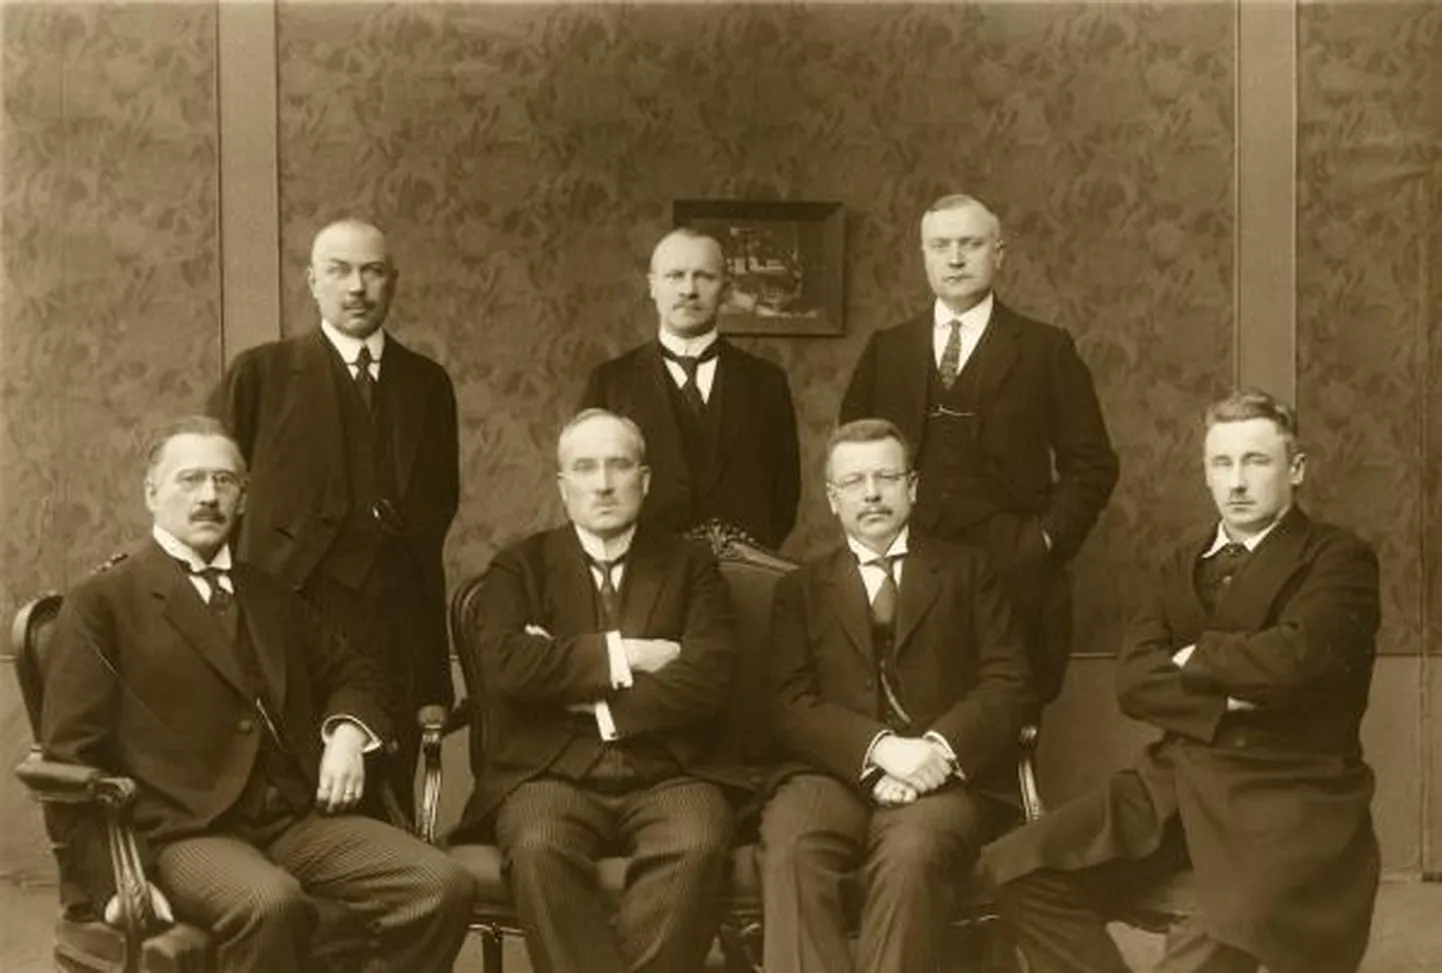 Soome rahudelegatsioon: istuvad Väinö Voionmaa, Juho Vennola, Juho Kusti Paasikivi (juht) ja Väinö Kivilinna, seisavad Alexander Frey, Väinö Tanner ja Rudolf Walden.